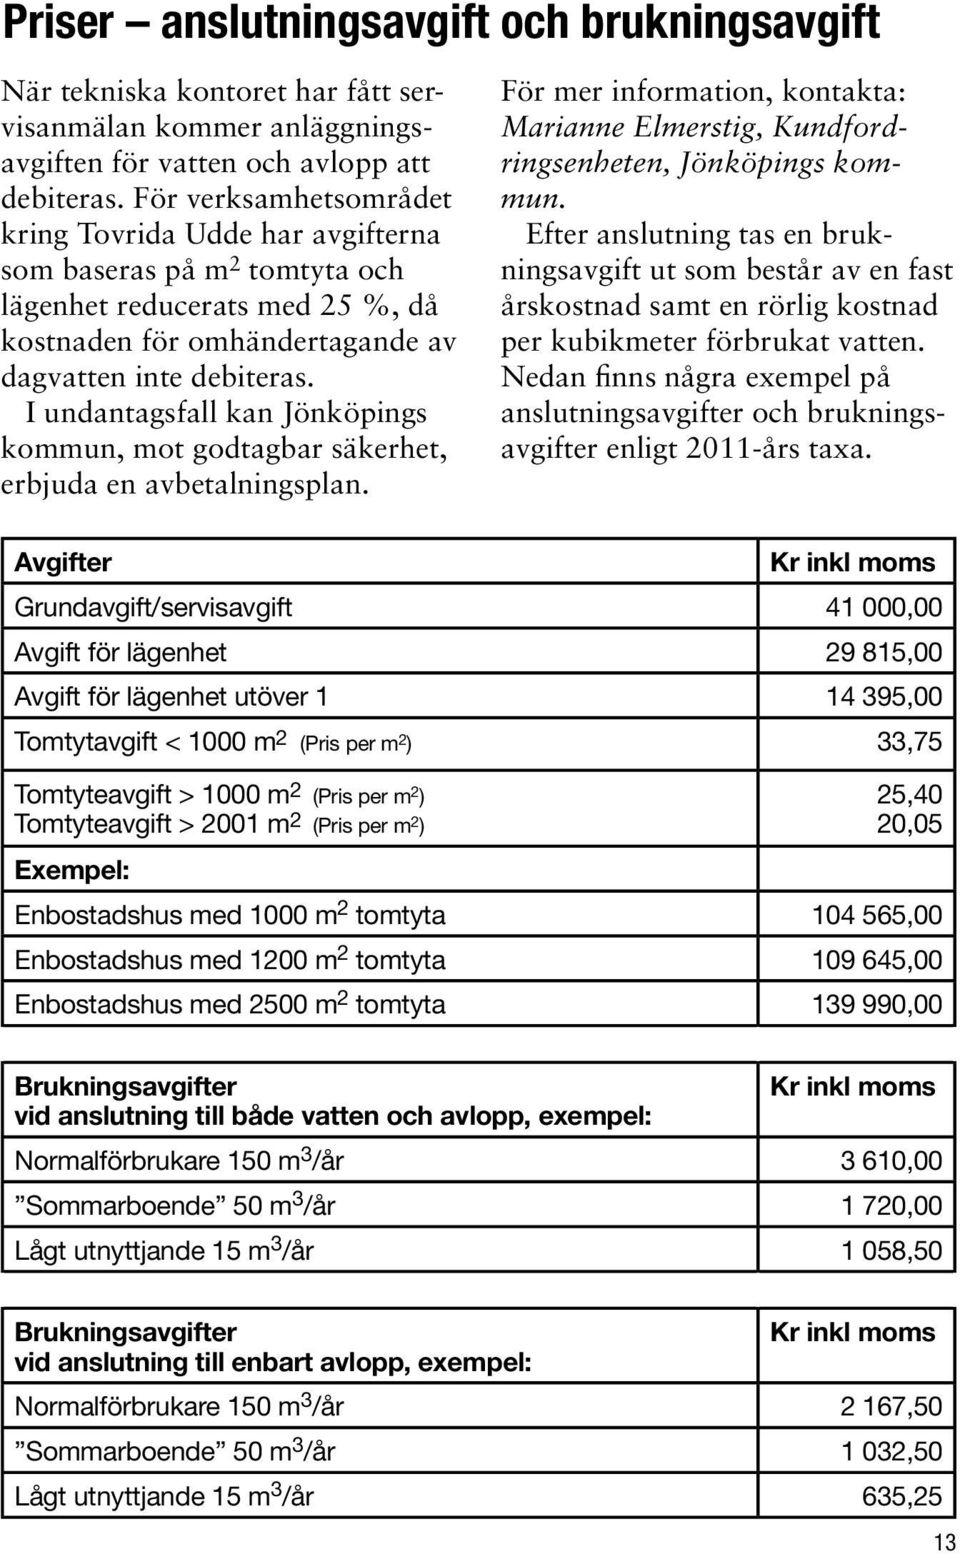 I undantagsfall kan Jönköpings kommun, mot godtagbar säkerhet, erbjuda en avbetalningsplan. För mer information, kontakta: Marianne Elmerstig, Kundfordringsenheten, Jönköpings kommun.